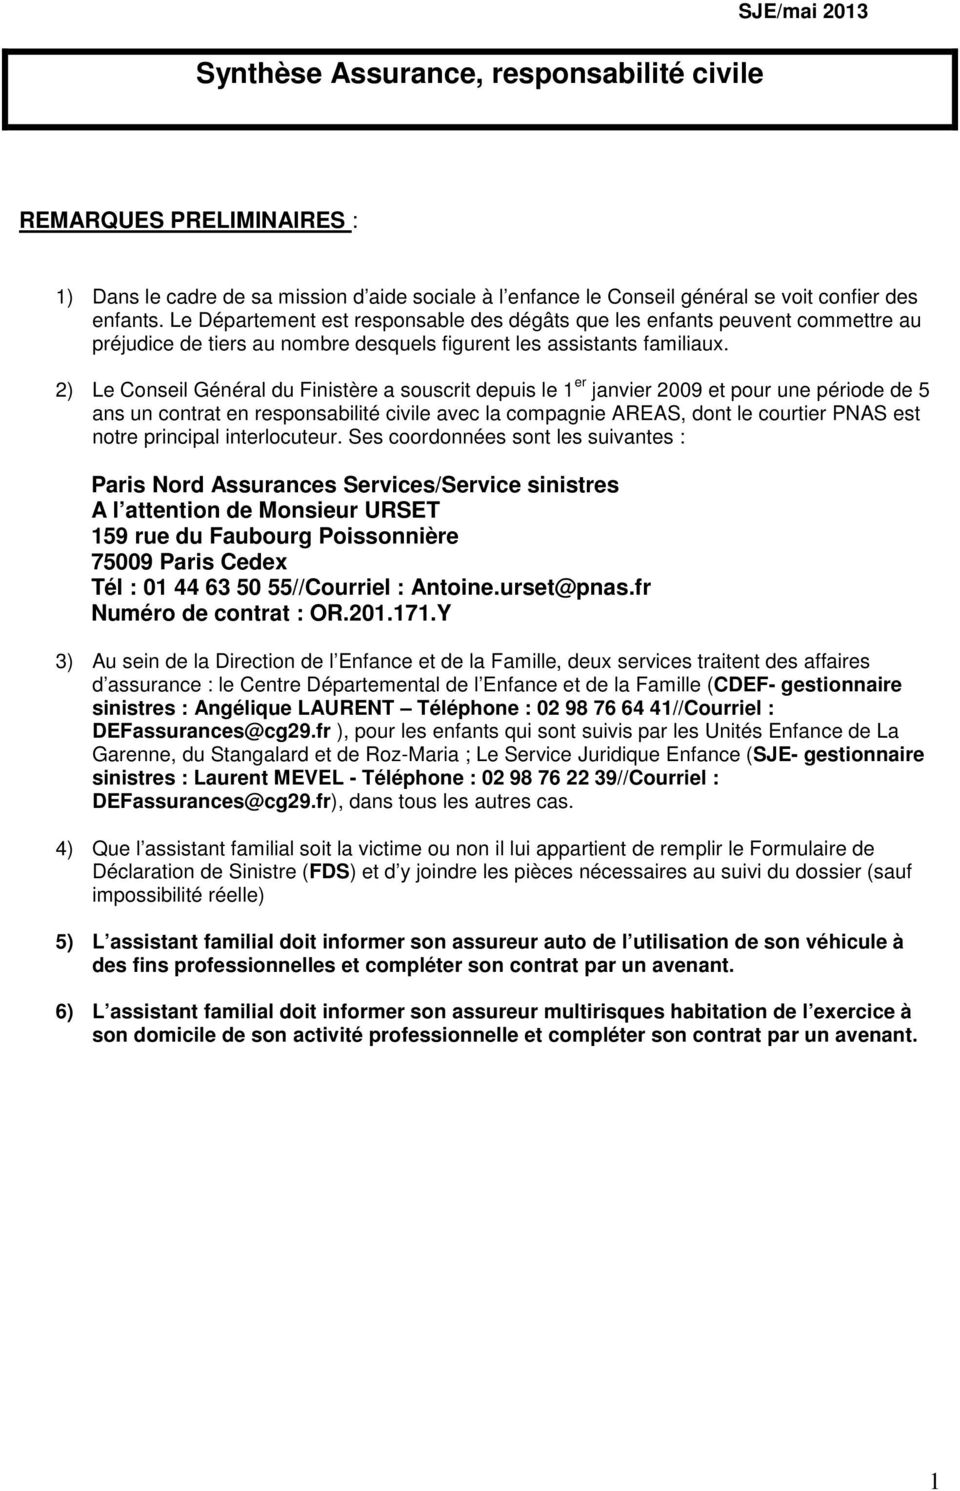 2) Le Conseil Général du Finistère a souscrit depuis le 1 er janvier 2009 et pour une période de 5 ans un contrat en responsabilité civile avec la compagnie AREAS, dont le courtier PNAS est notre